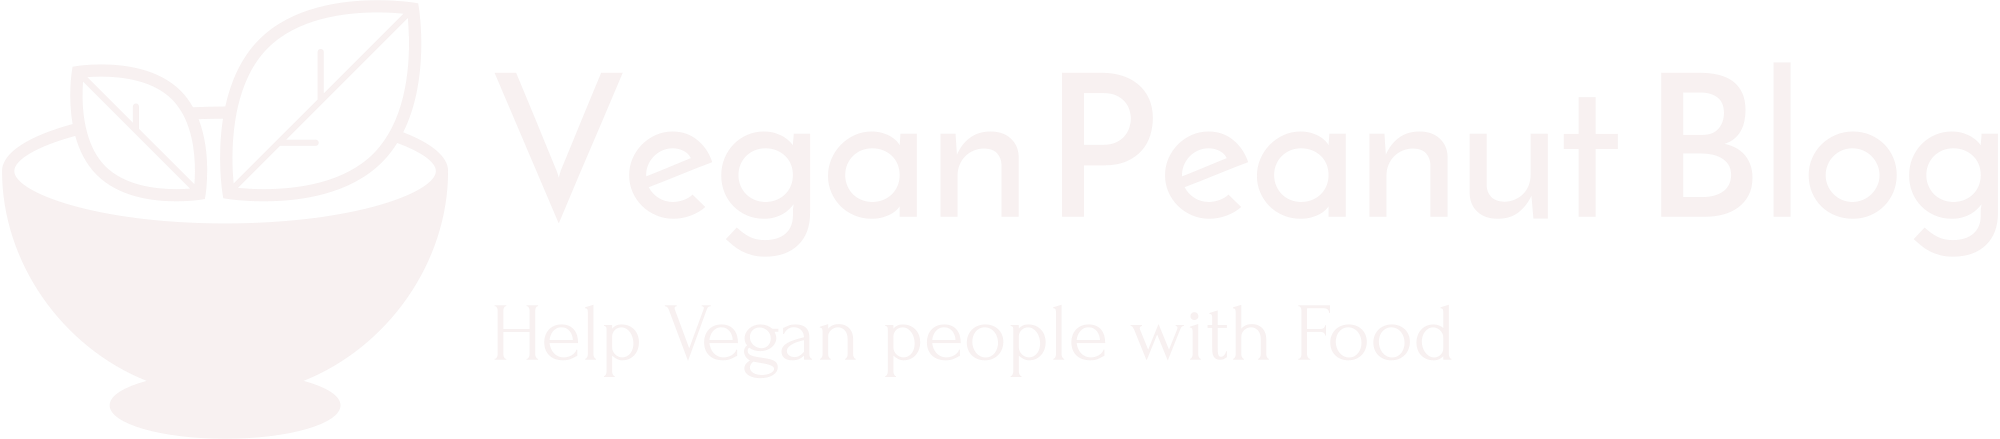 Vegan Peanut Blog